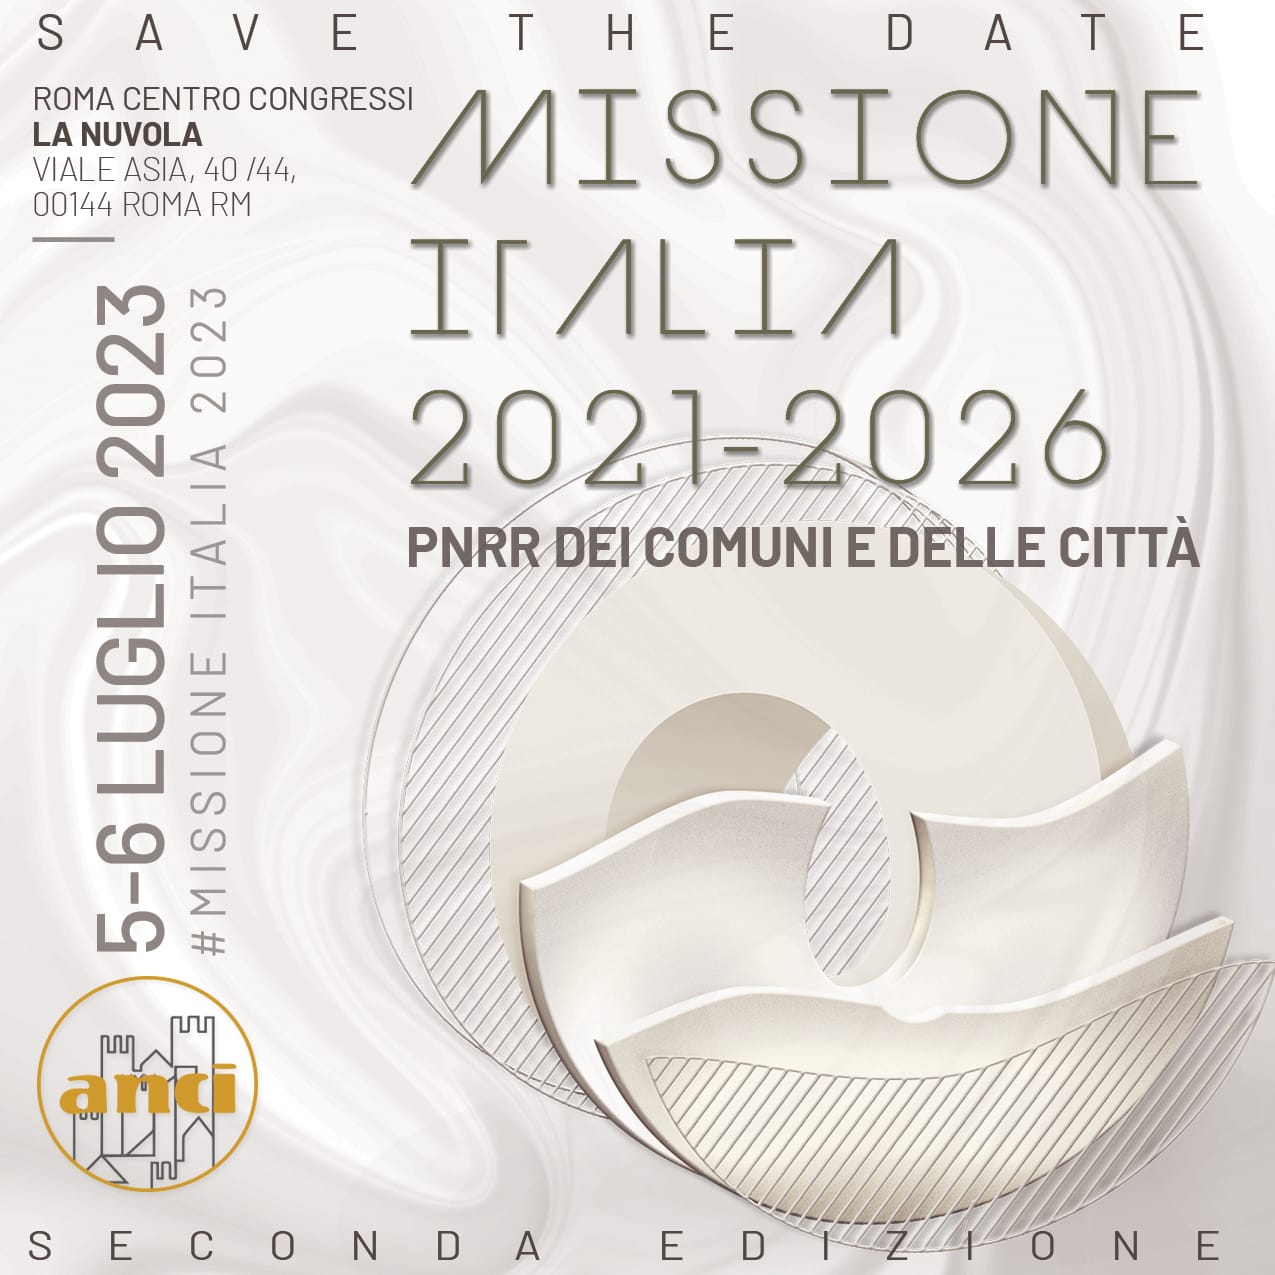 Missione Italia, appuntamento 5 e 6 luglio a Roma – Centro Congressi “La Nuvola”. Iscriviti